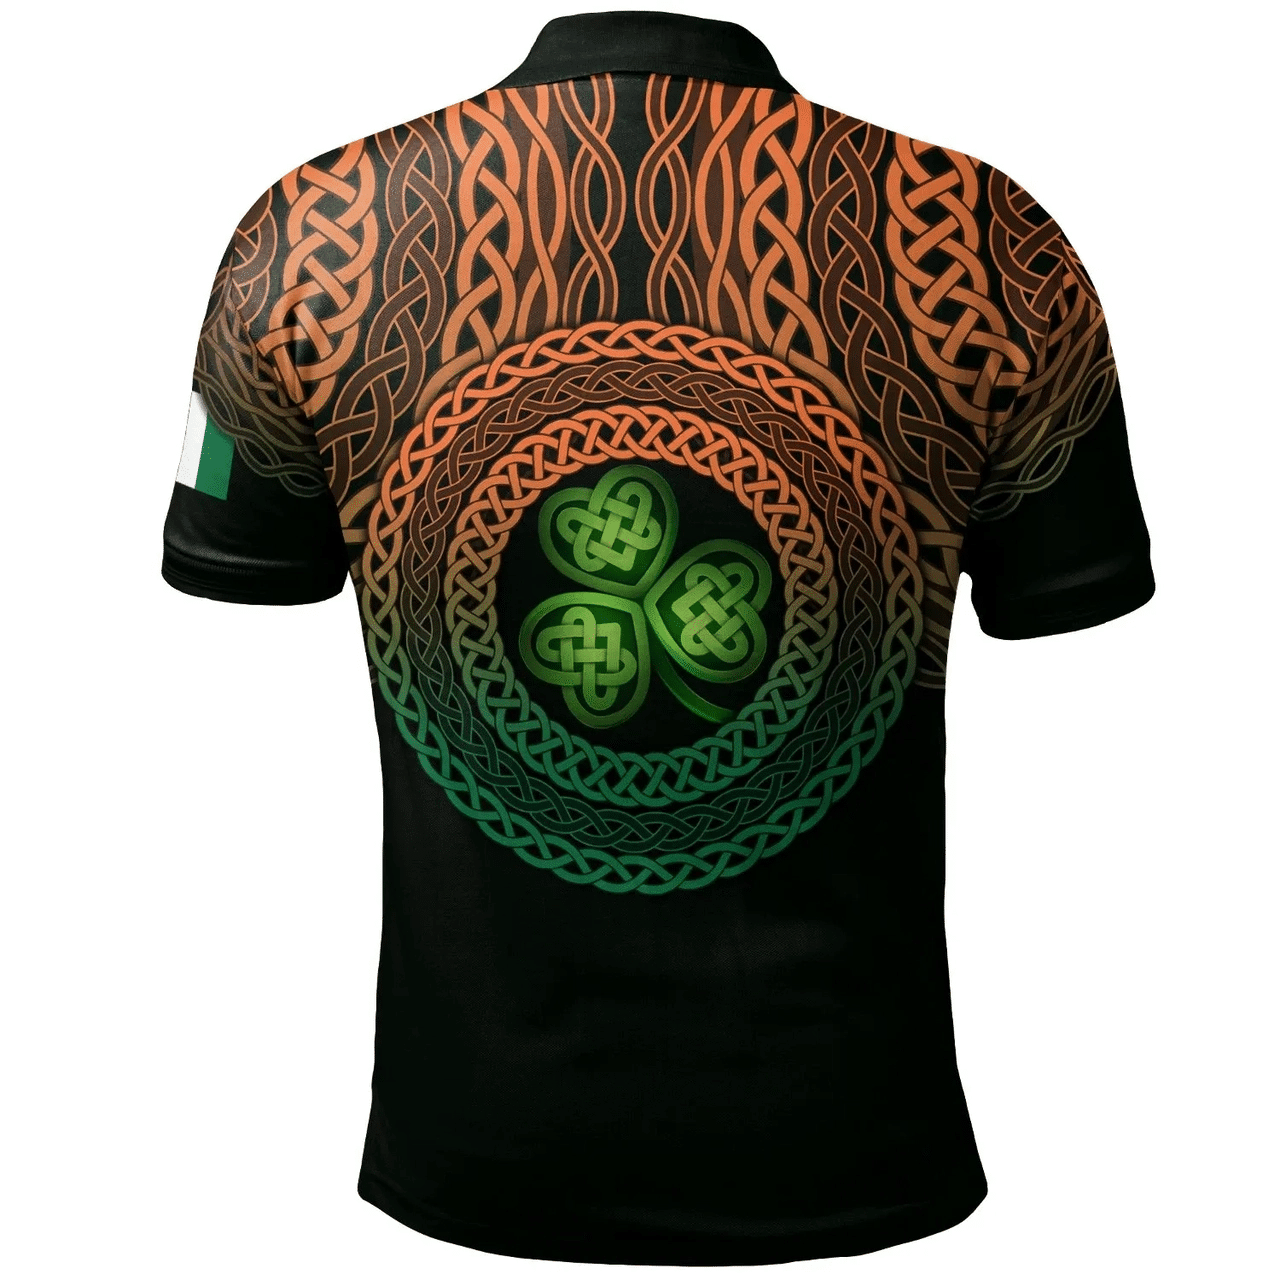 1stIreland Ireland Polo Shirt - Broder or O'Broder Irish Family Crest Polo Shirt - Celtic Pride A7 | 1stIreland.com